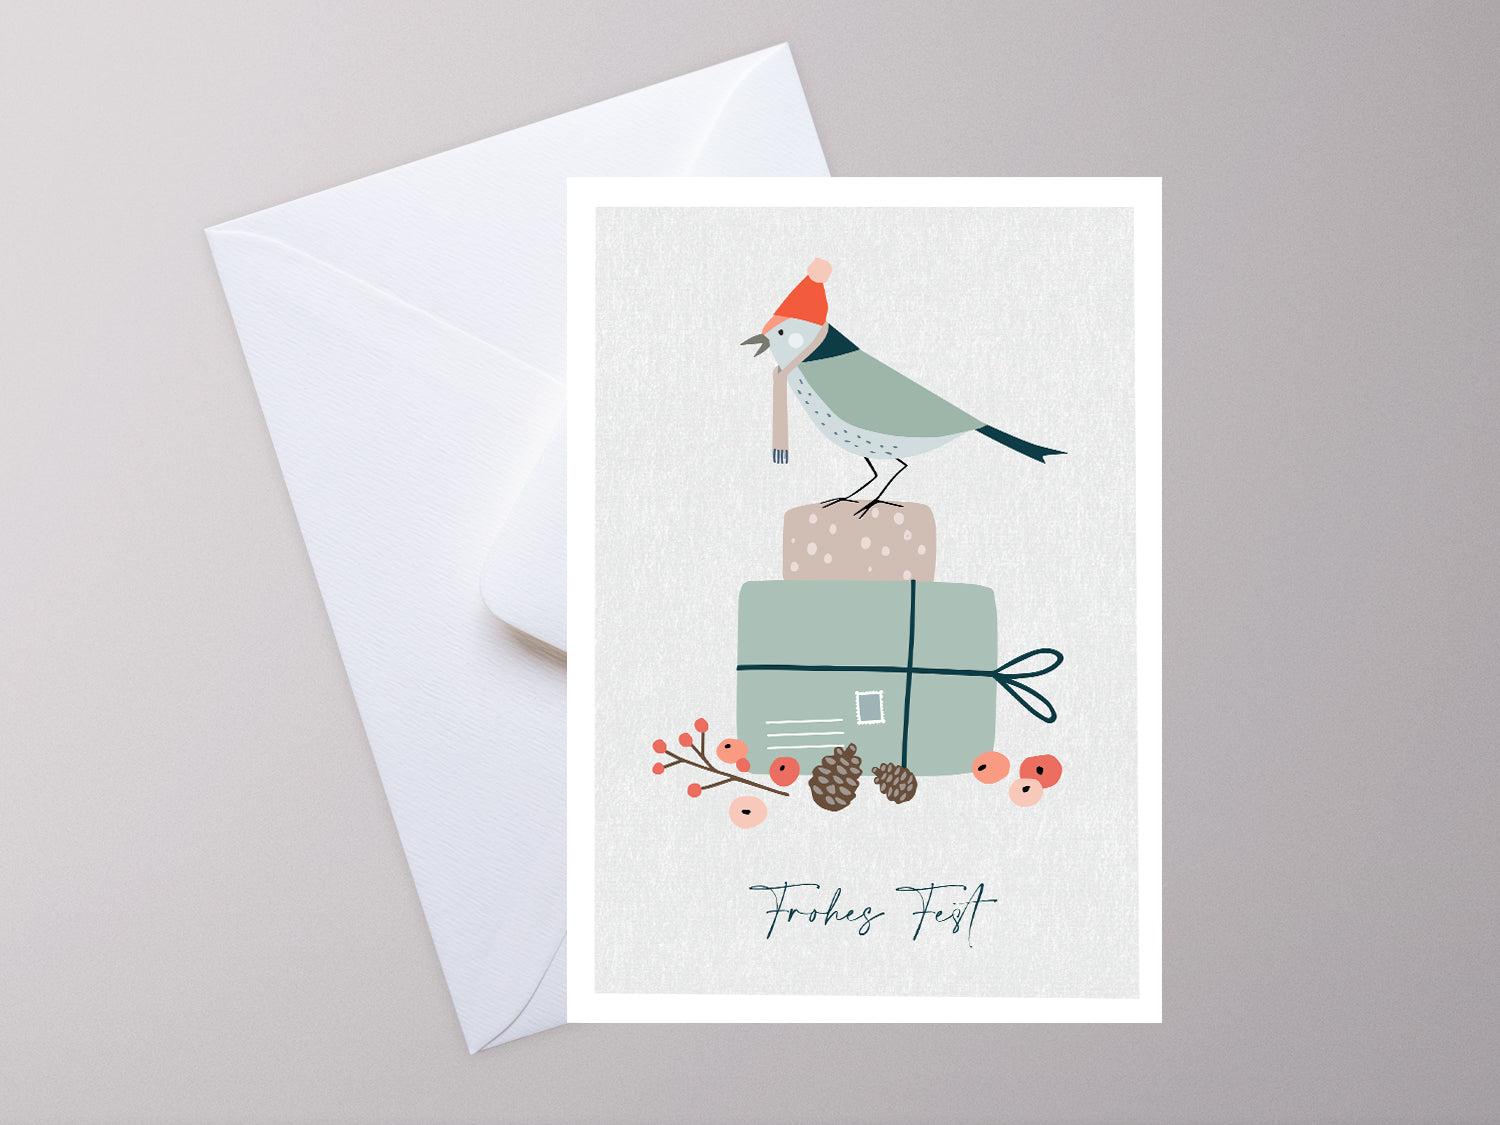 Weihnachtskarte im Scandi Nordic Stil als kleiner Postkartengruß, illustriert mit einem Vogel auf einem Geschenk und dem Wunsch nach einem "Frohen Fest".  Die gedeckten Pastellfarben und der minimalistischem Nordic Design Stil zaubert dieser Weihnachtsgruß eine gemütliche Atmosphäre unter deinen Tannenbaum.